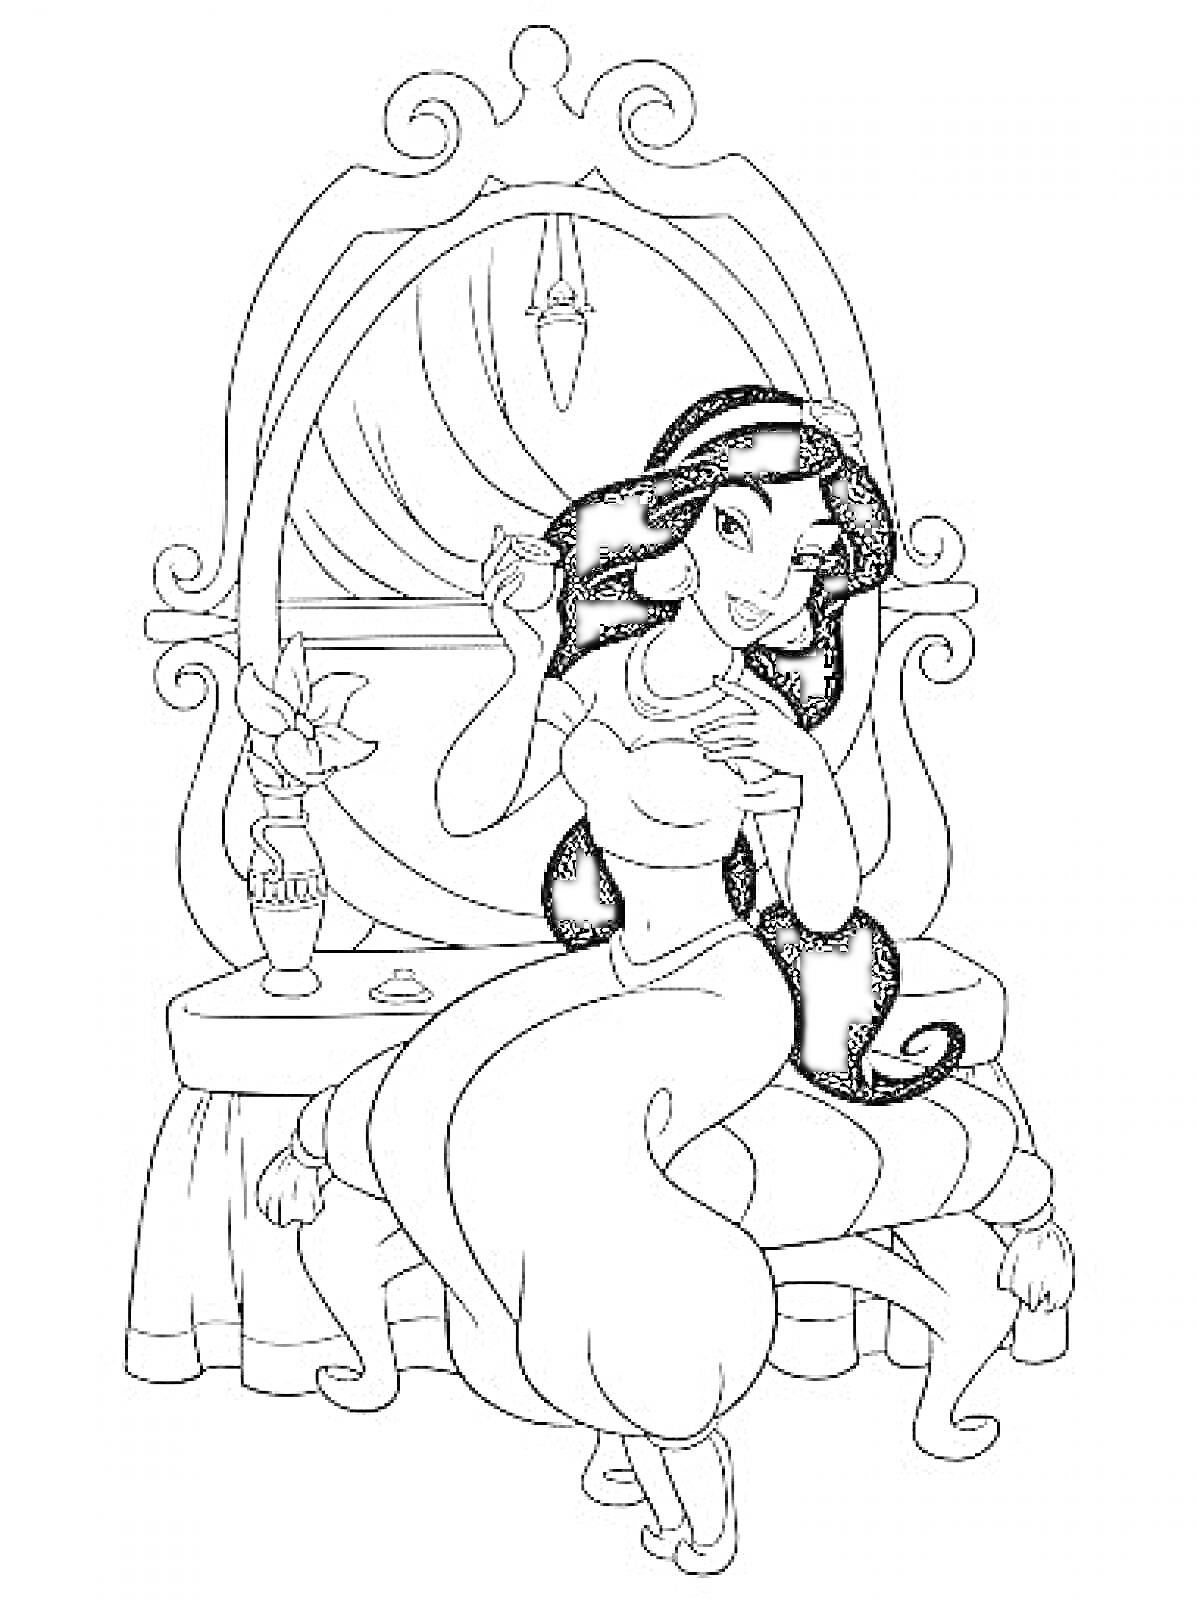 Раскраска Принцесса Жасмин с распущенными волосами, сидящая перед туалетным столиком, с зеркалом, цветком в вазе и косметикой